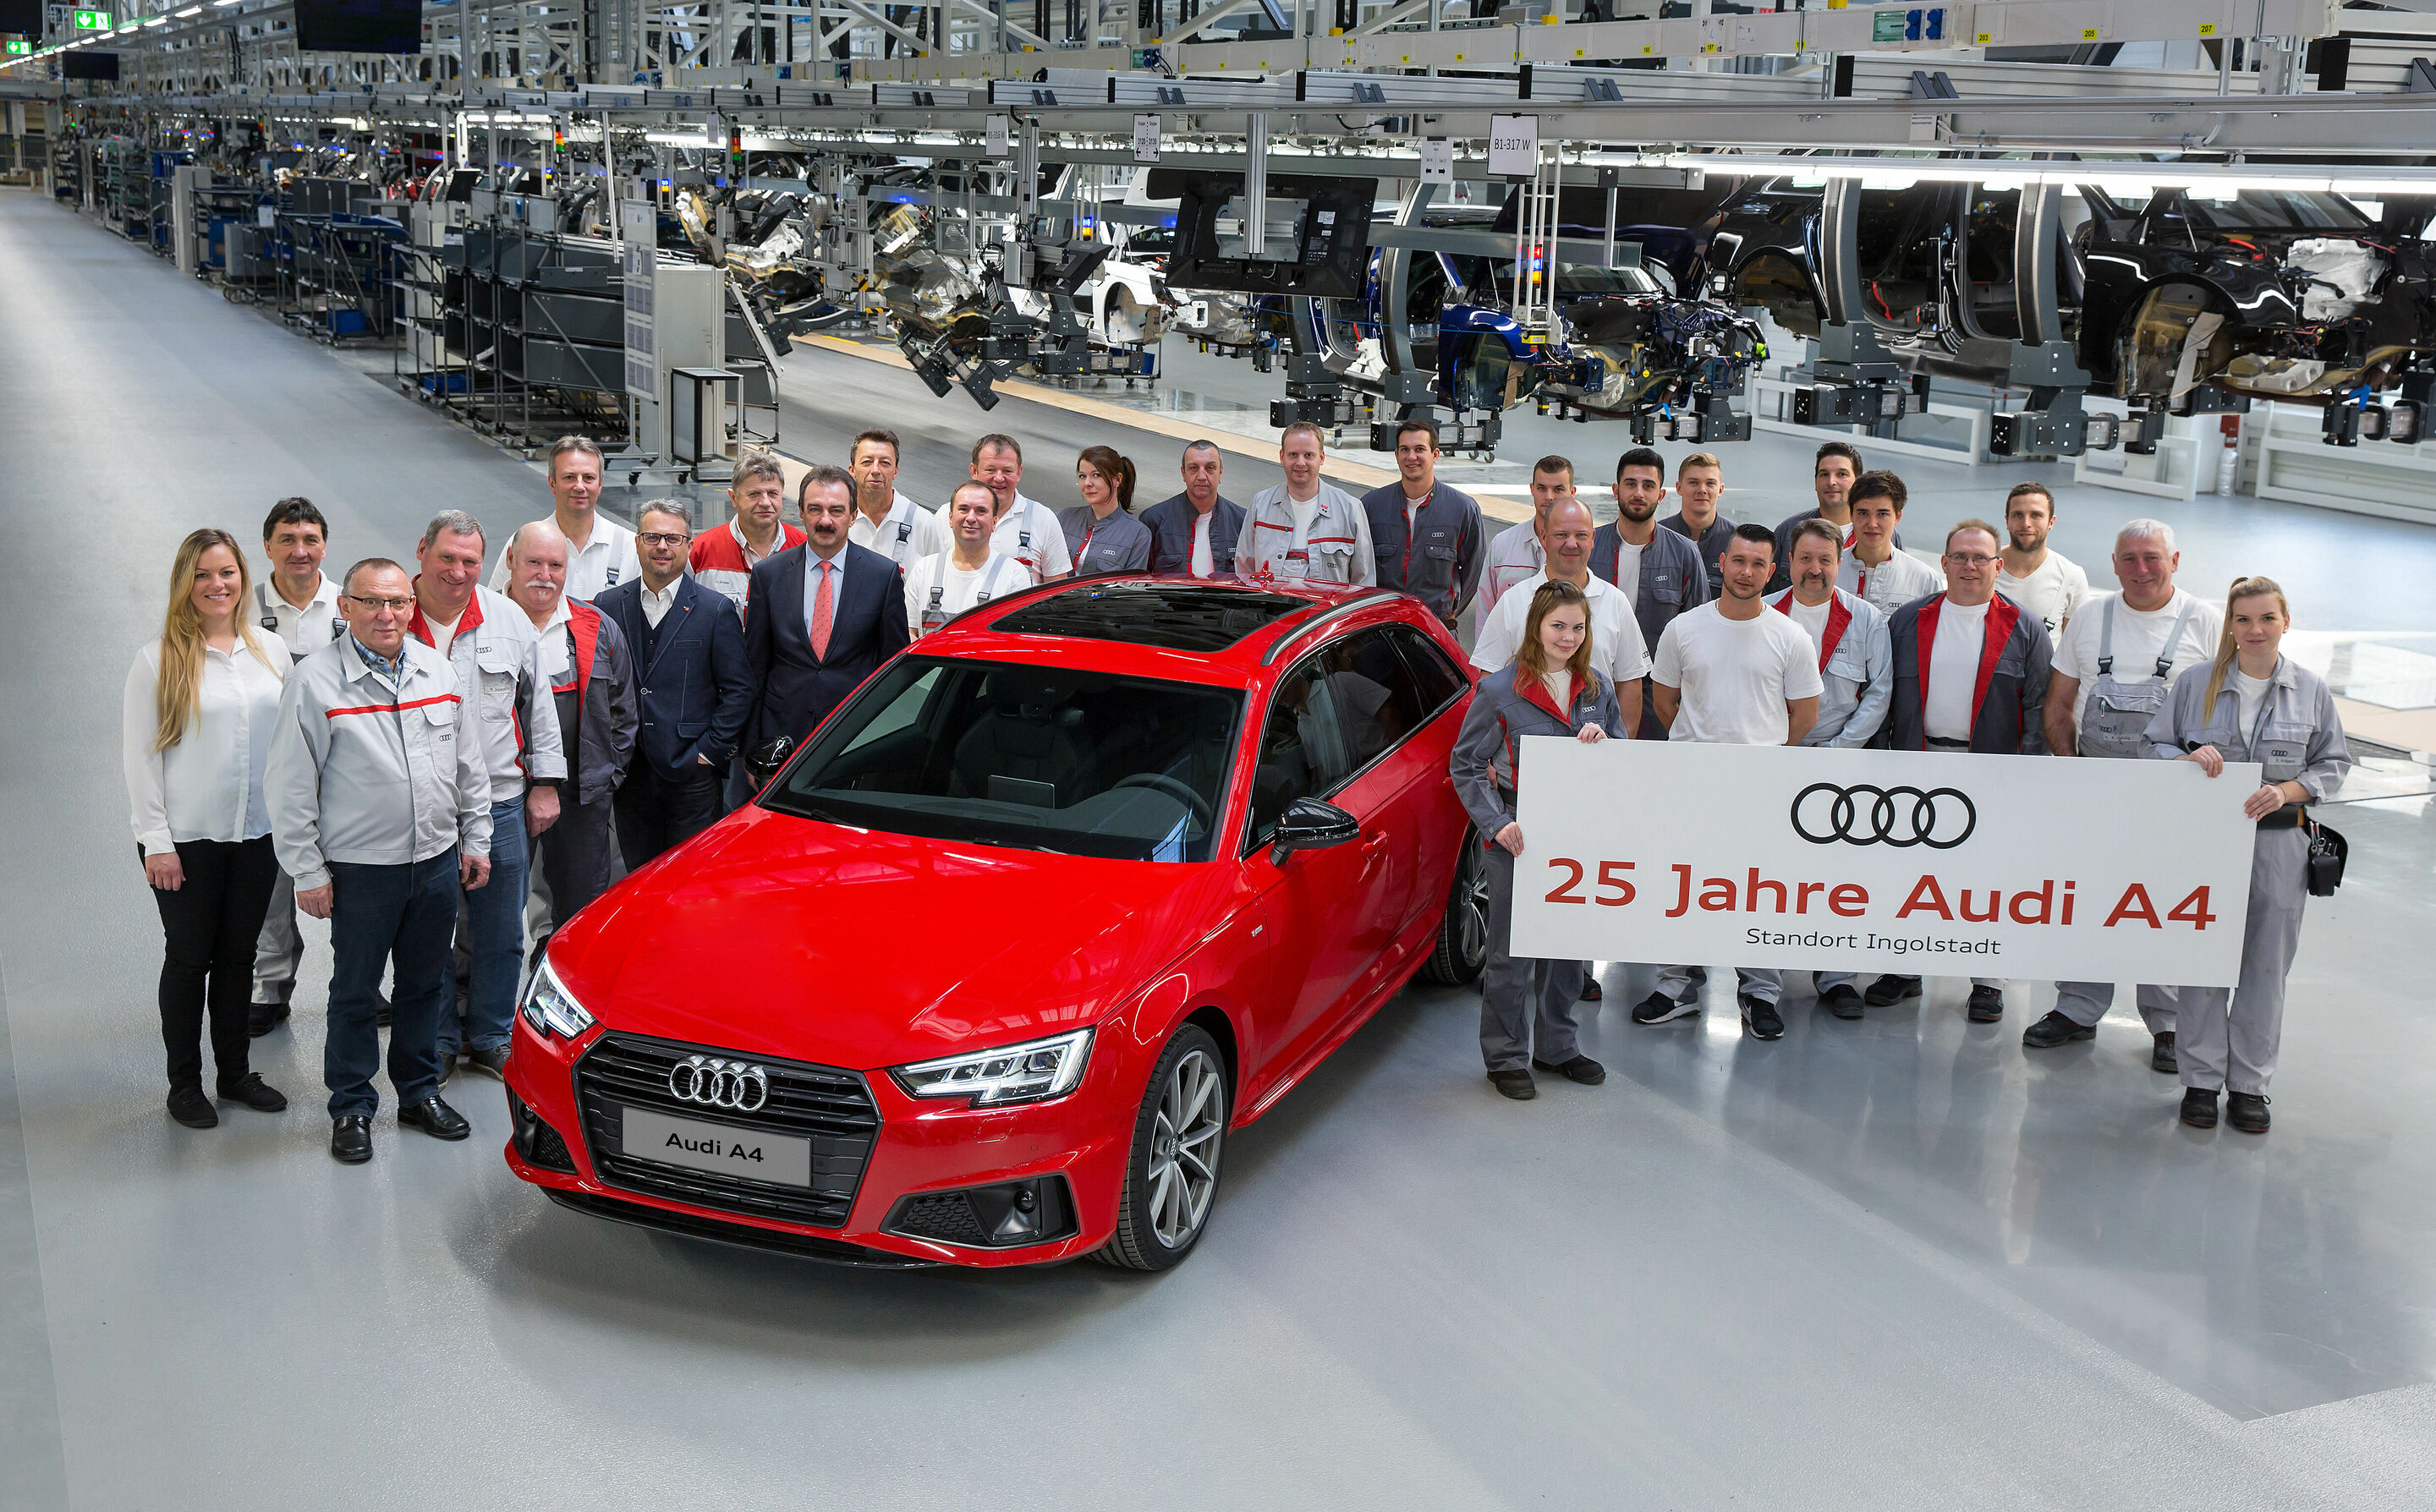 Silbernes Jubiläum: Audi A4 feiert 25. Geburtstag